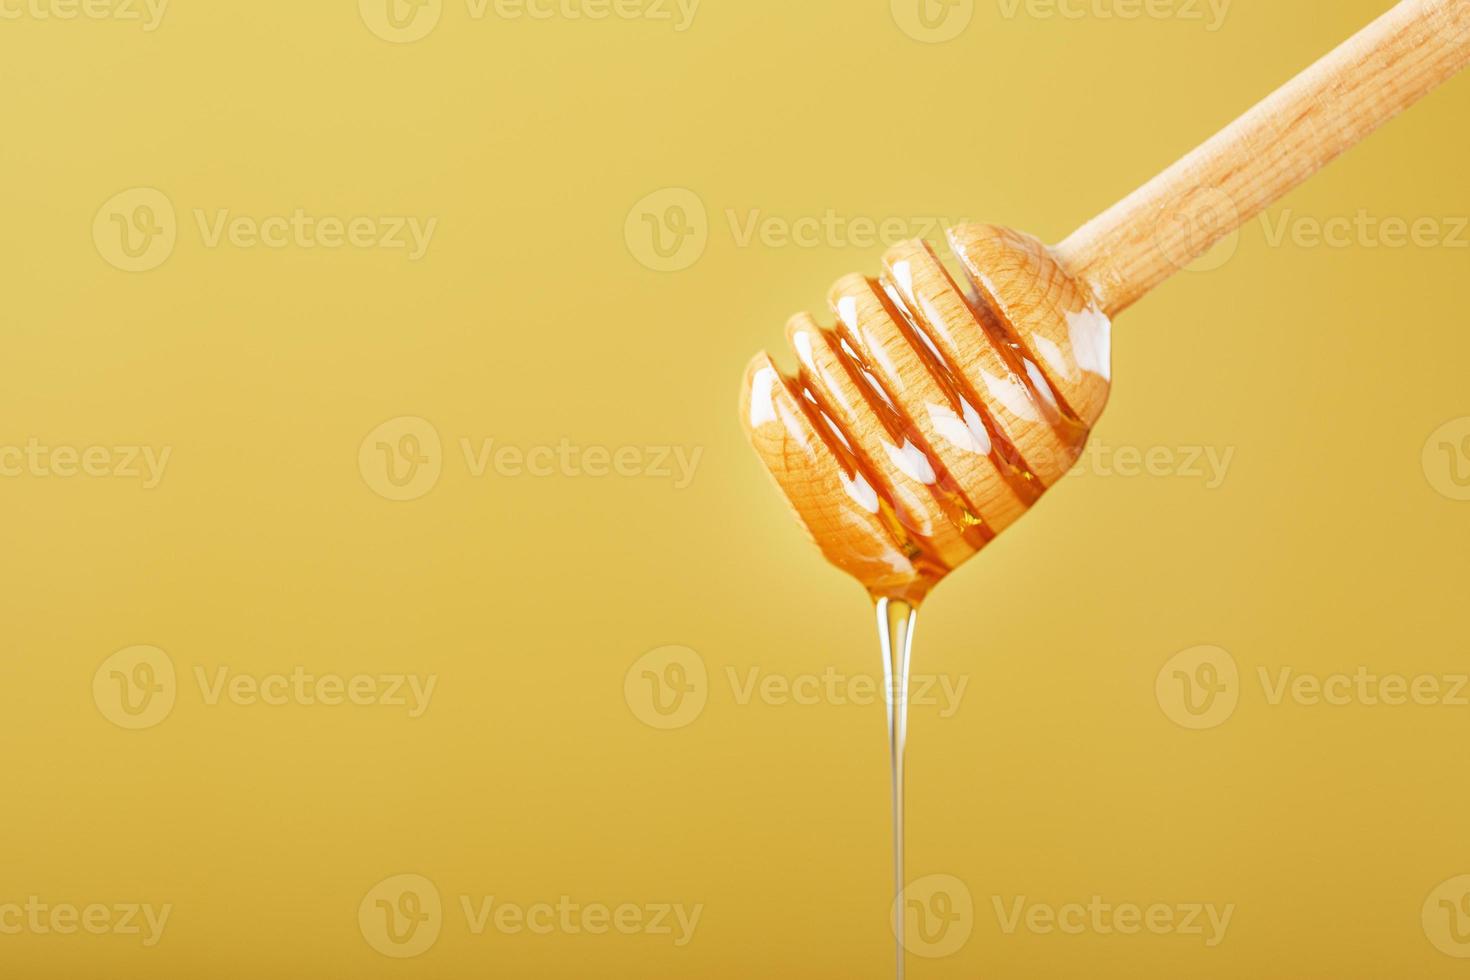 la miel gotea en una fina corriente de un cucharón de miel sobre un fondo amarillo. foto